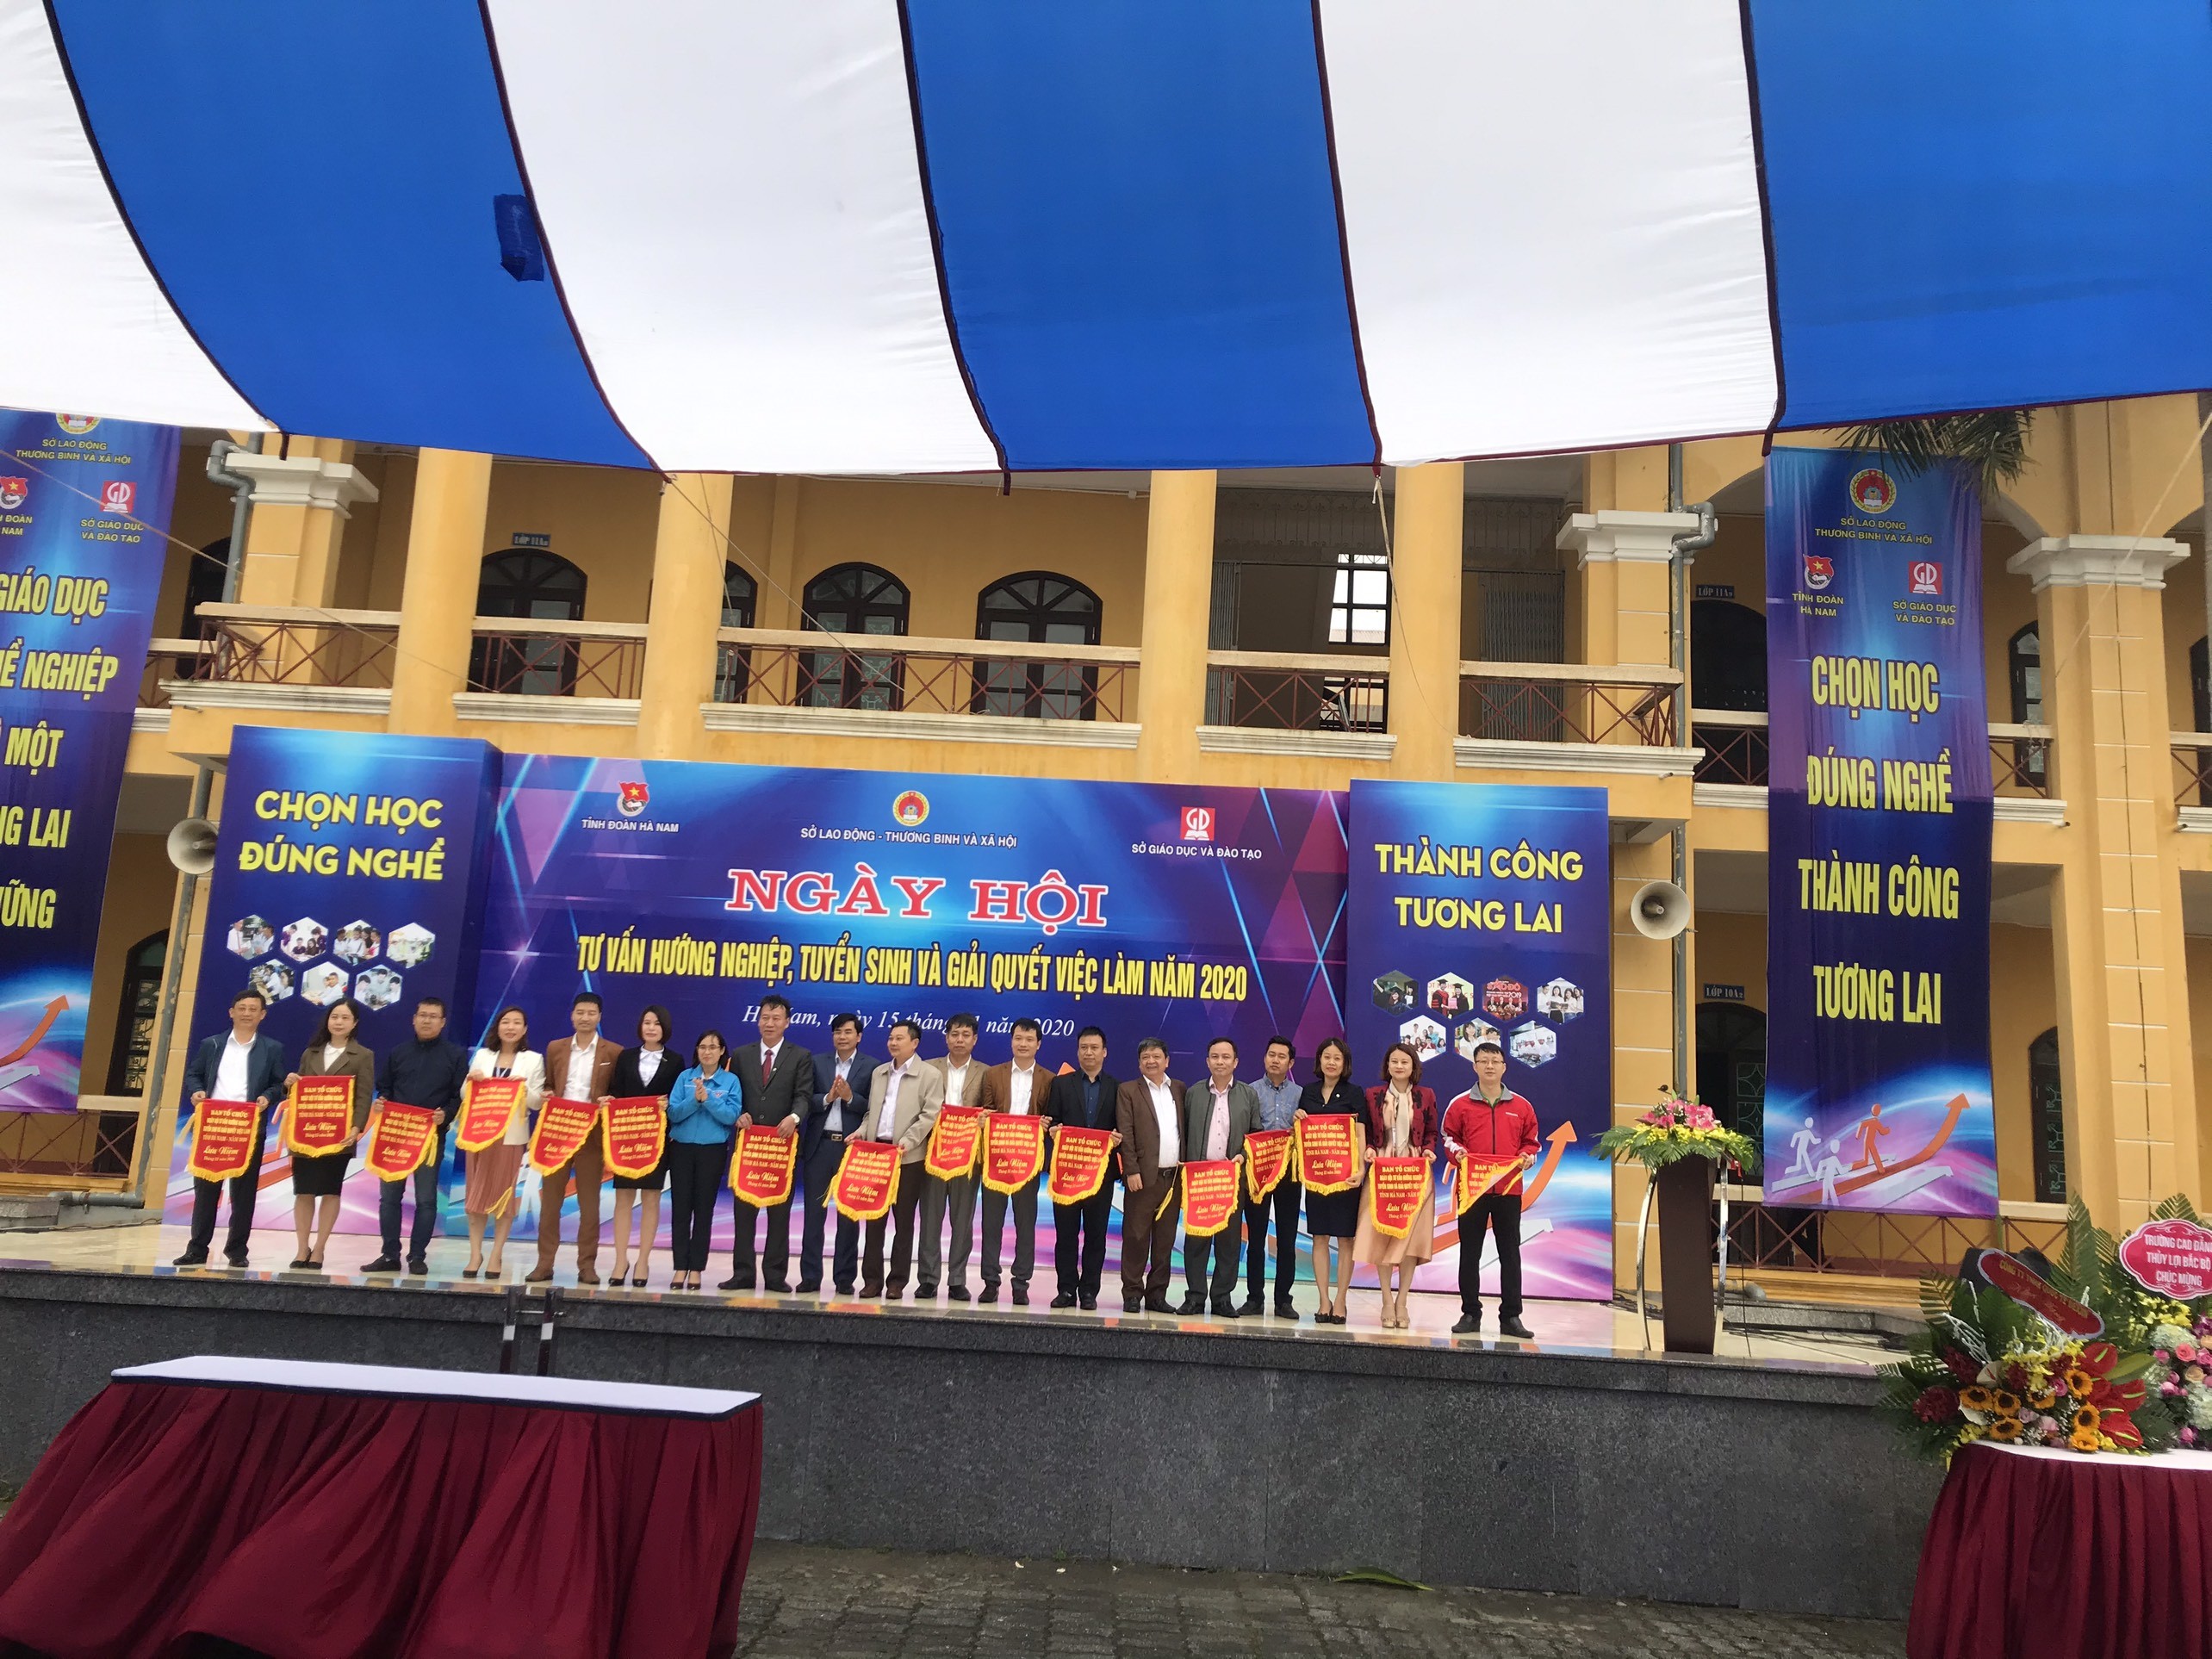 TVNAS tham dự Ngày hội Tư vấn, hướng nghiệp - Tuyển sinh và giải quyết việc làm năm 2020 tại tỉnh Hà Nam